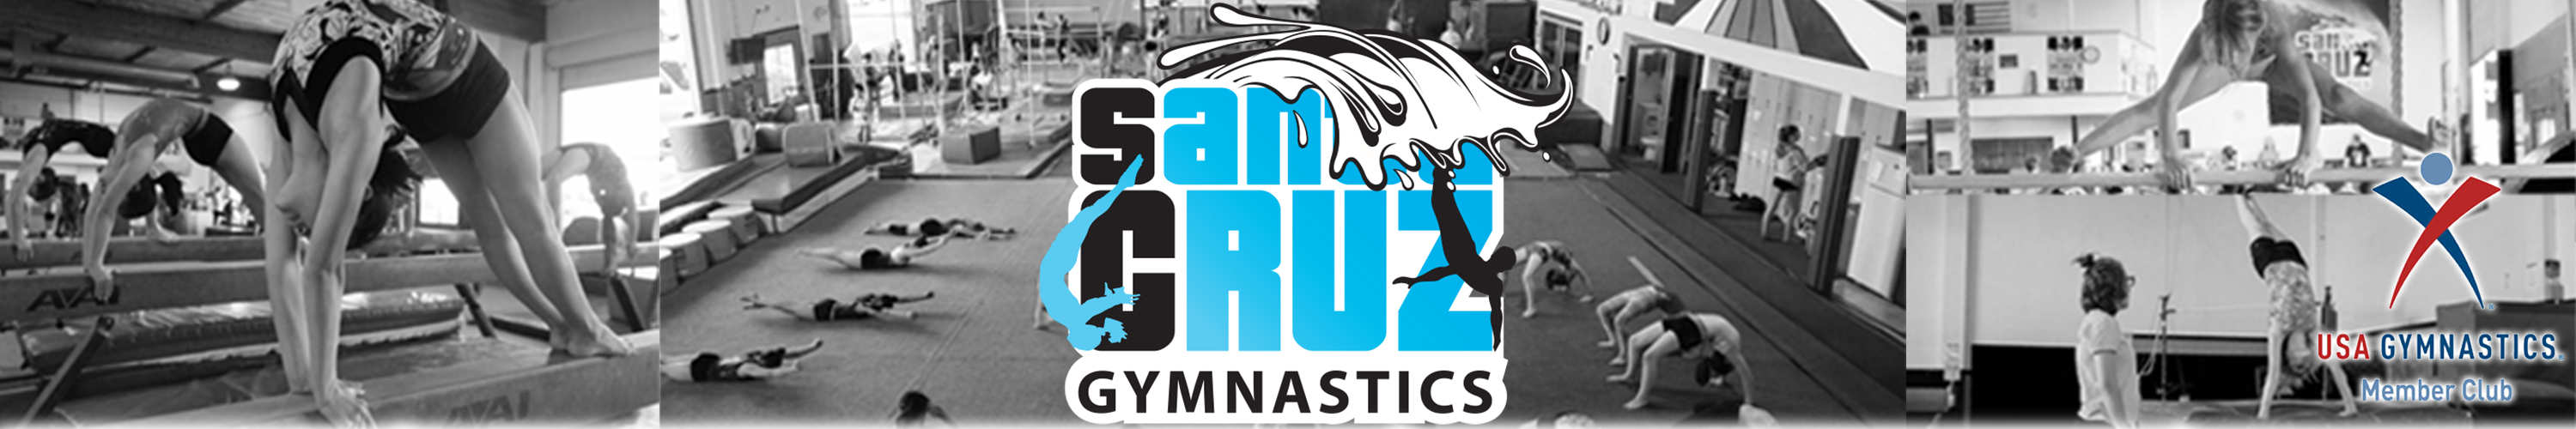 Santa Cruz Gymnastics Center